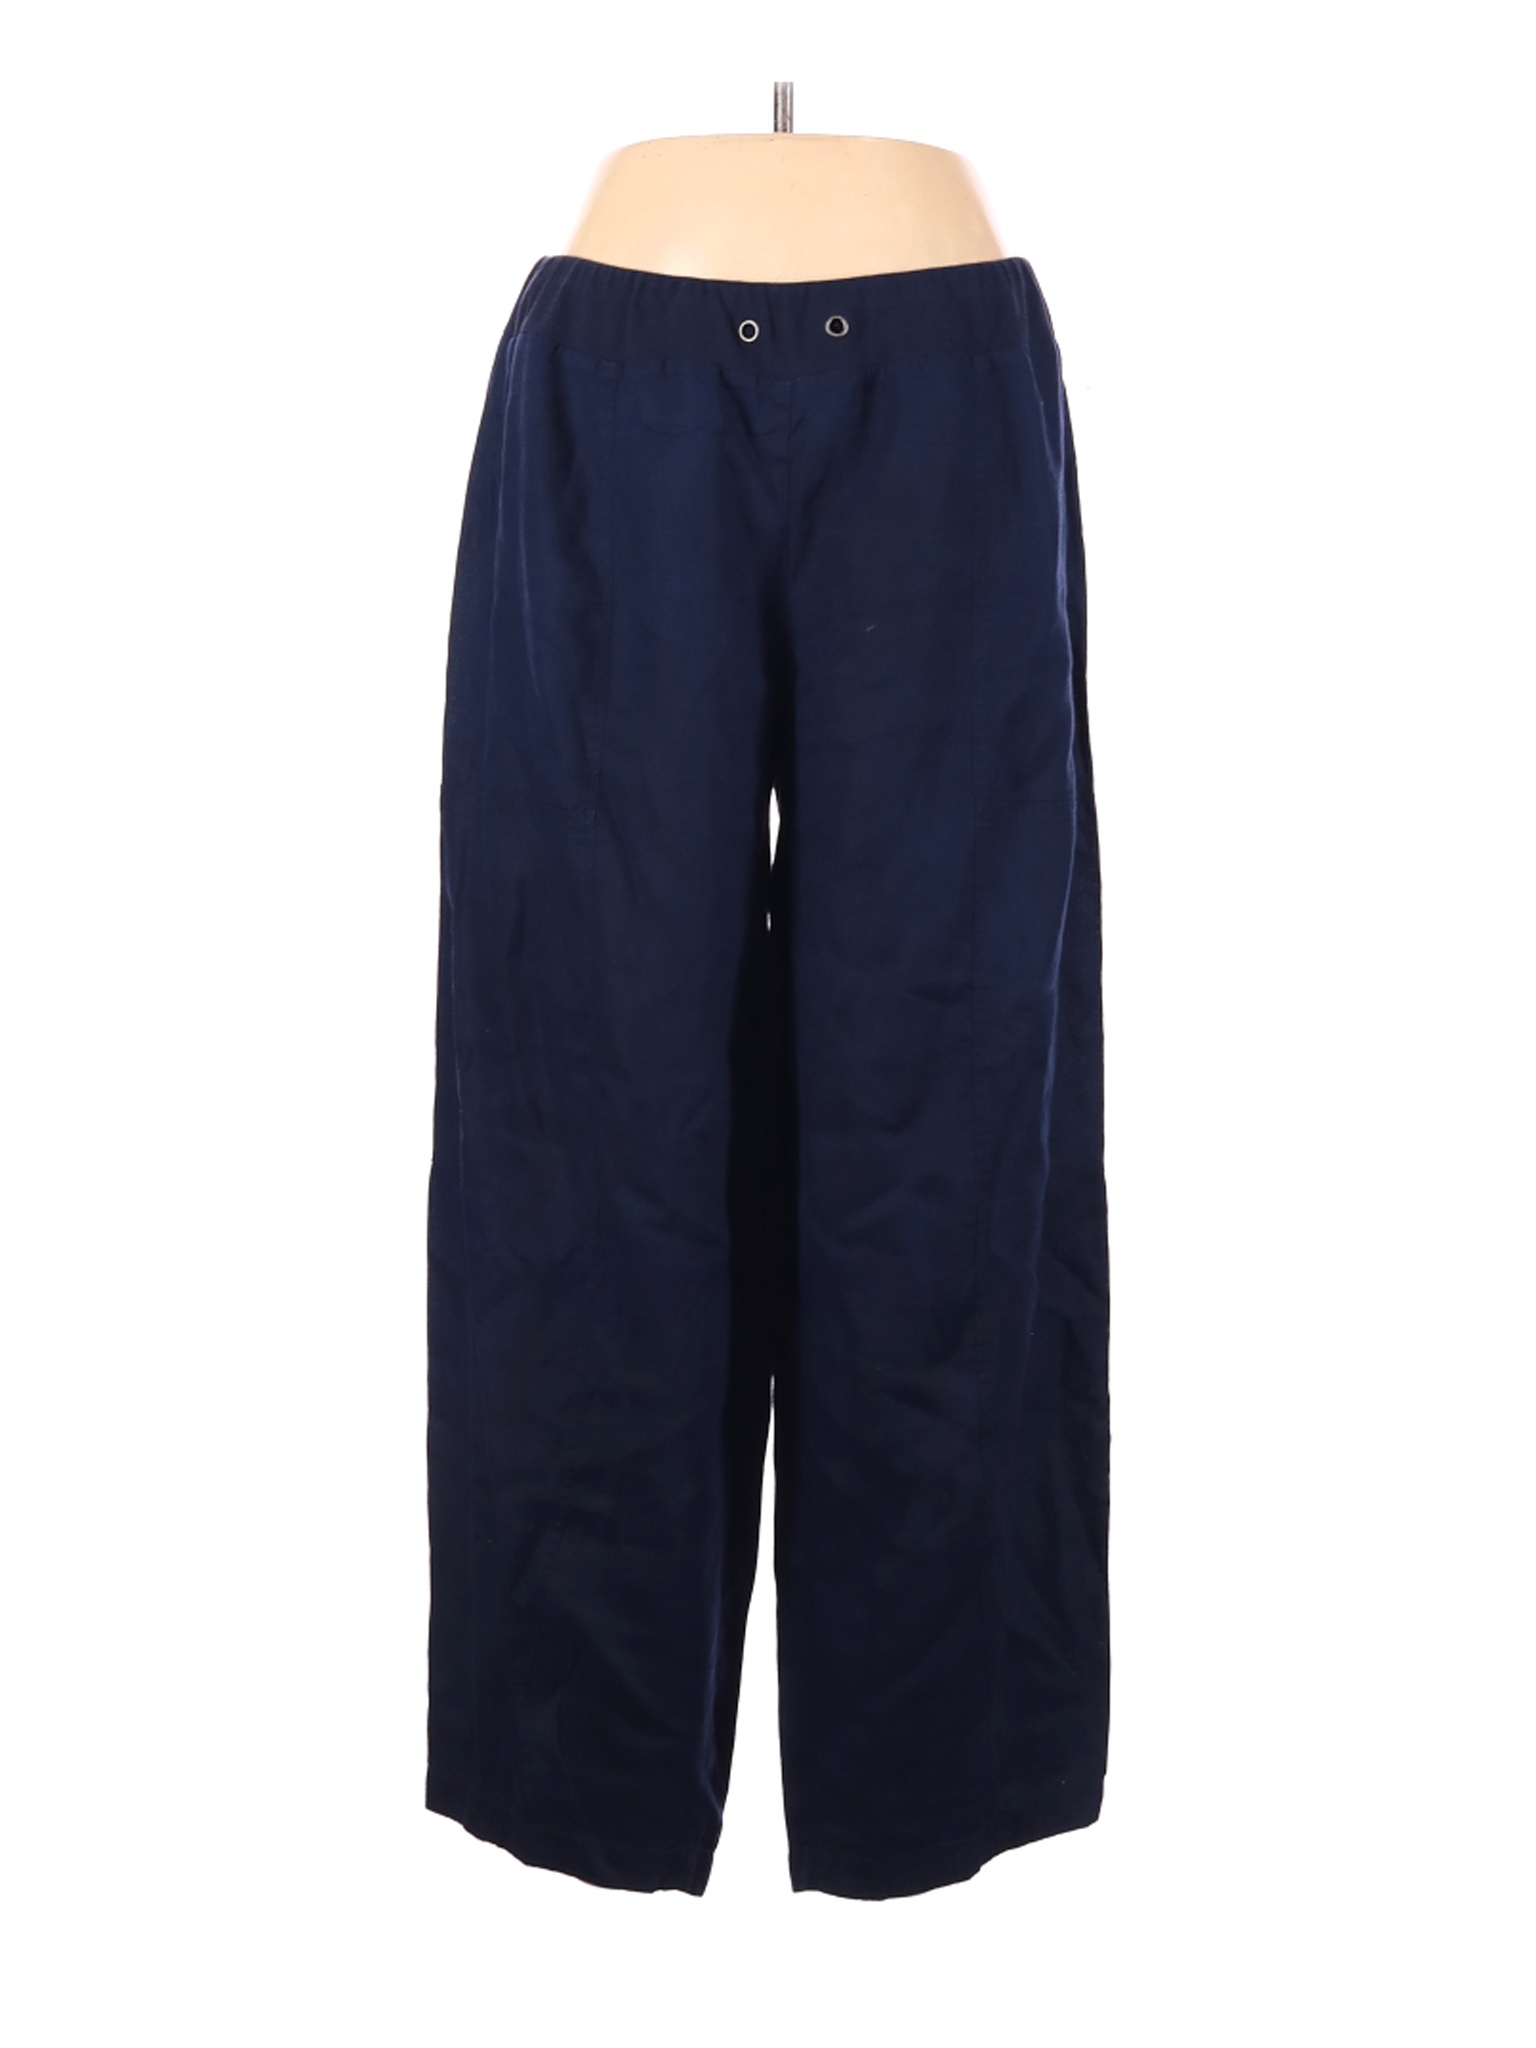 Eileen Fisher Women Blue Linen Pants L | eBay